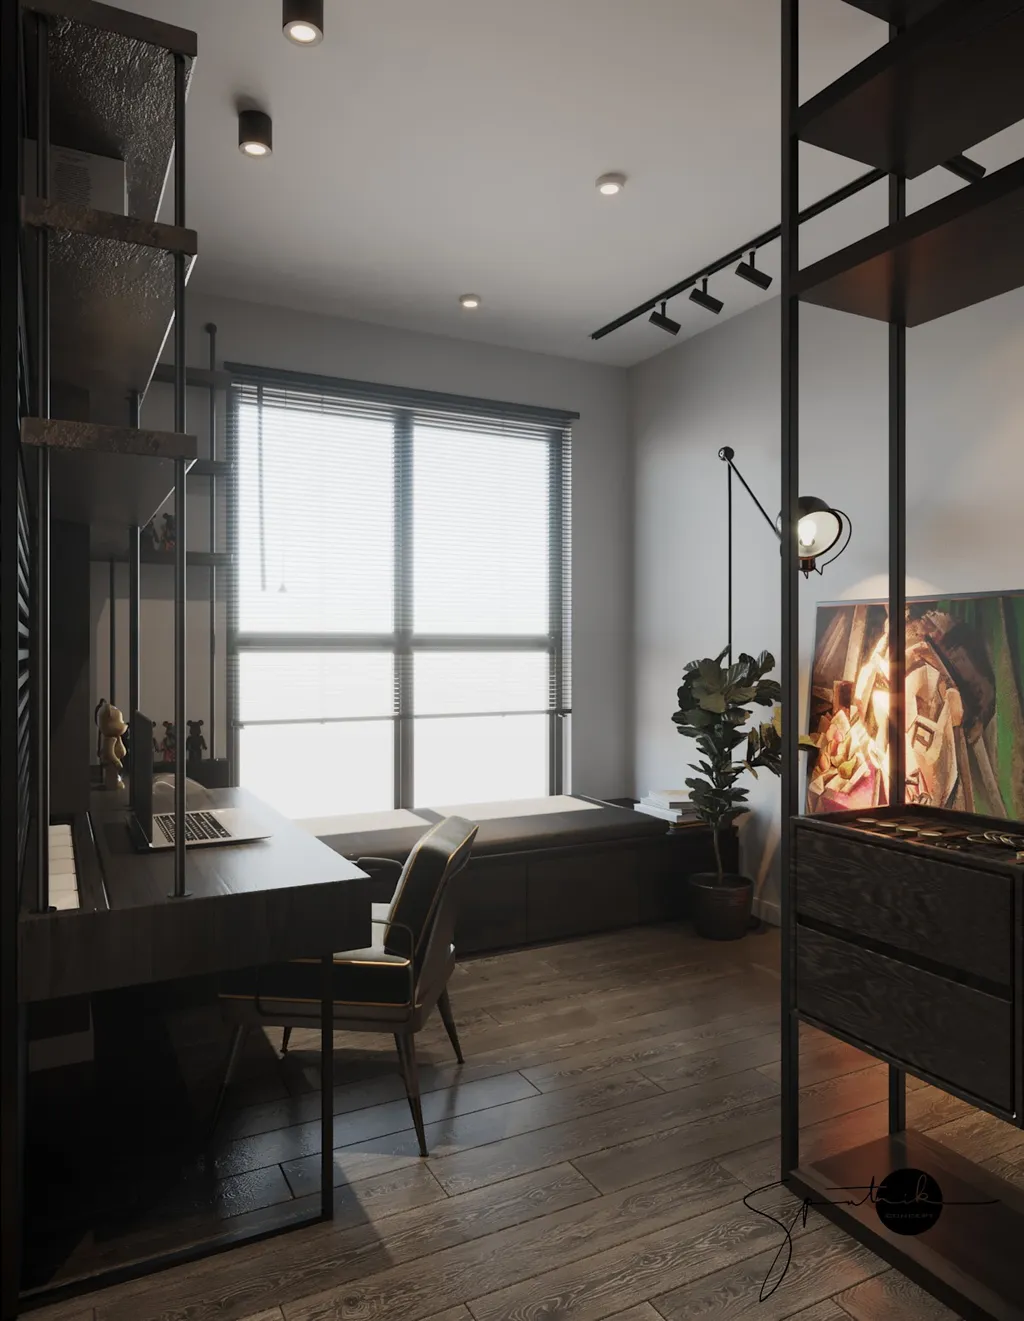 Công trình hoàn thiện nội thất cho phòng làm việc căn hộ theo phong cách Industrial